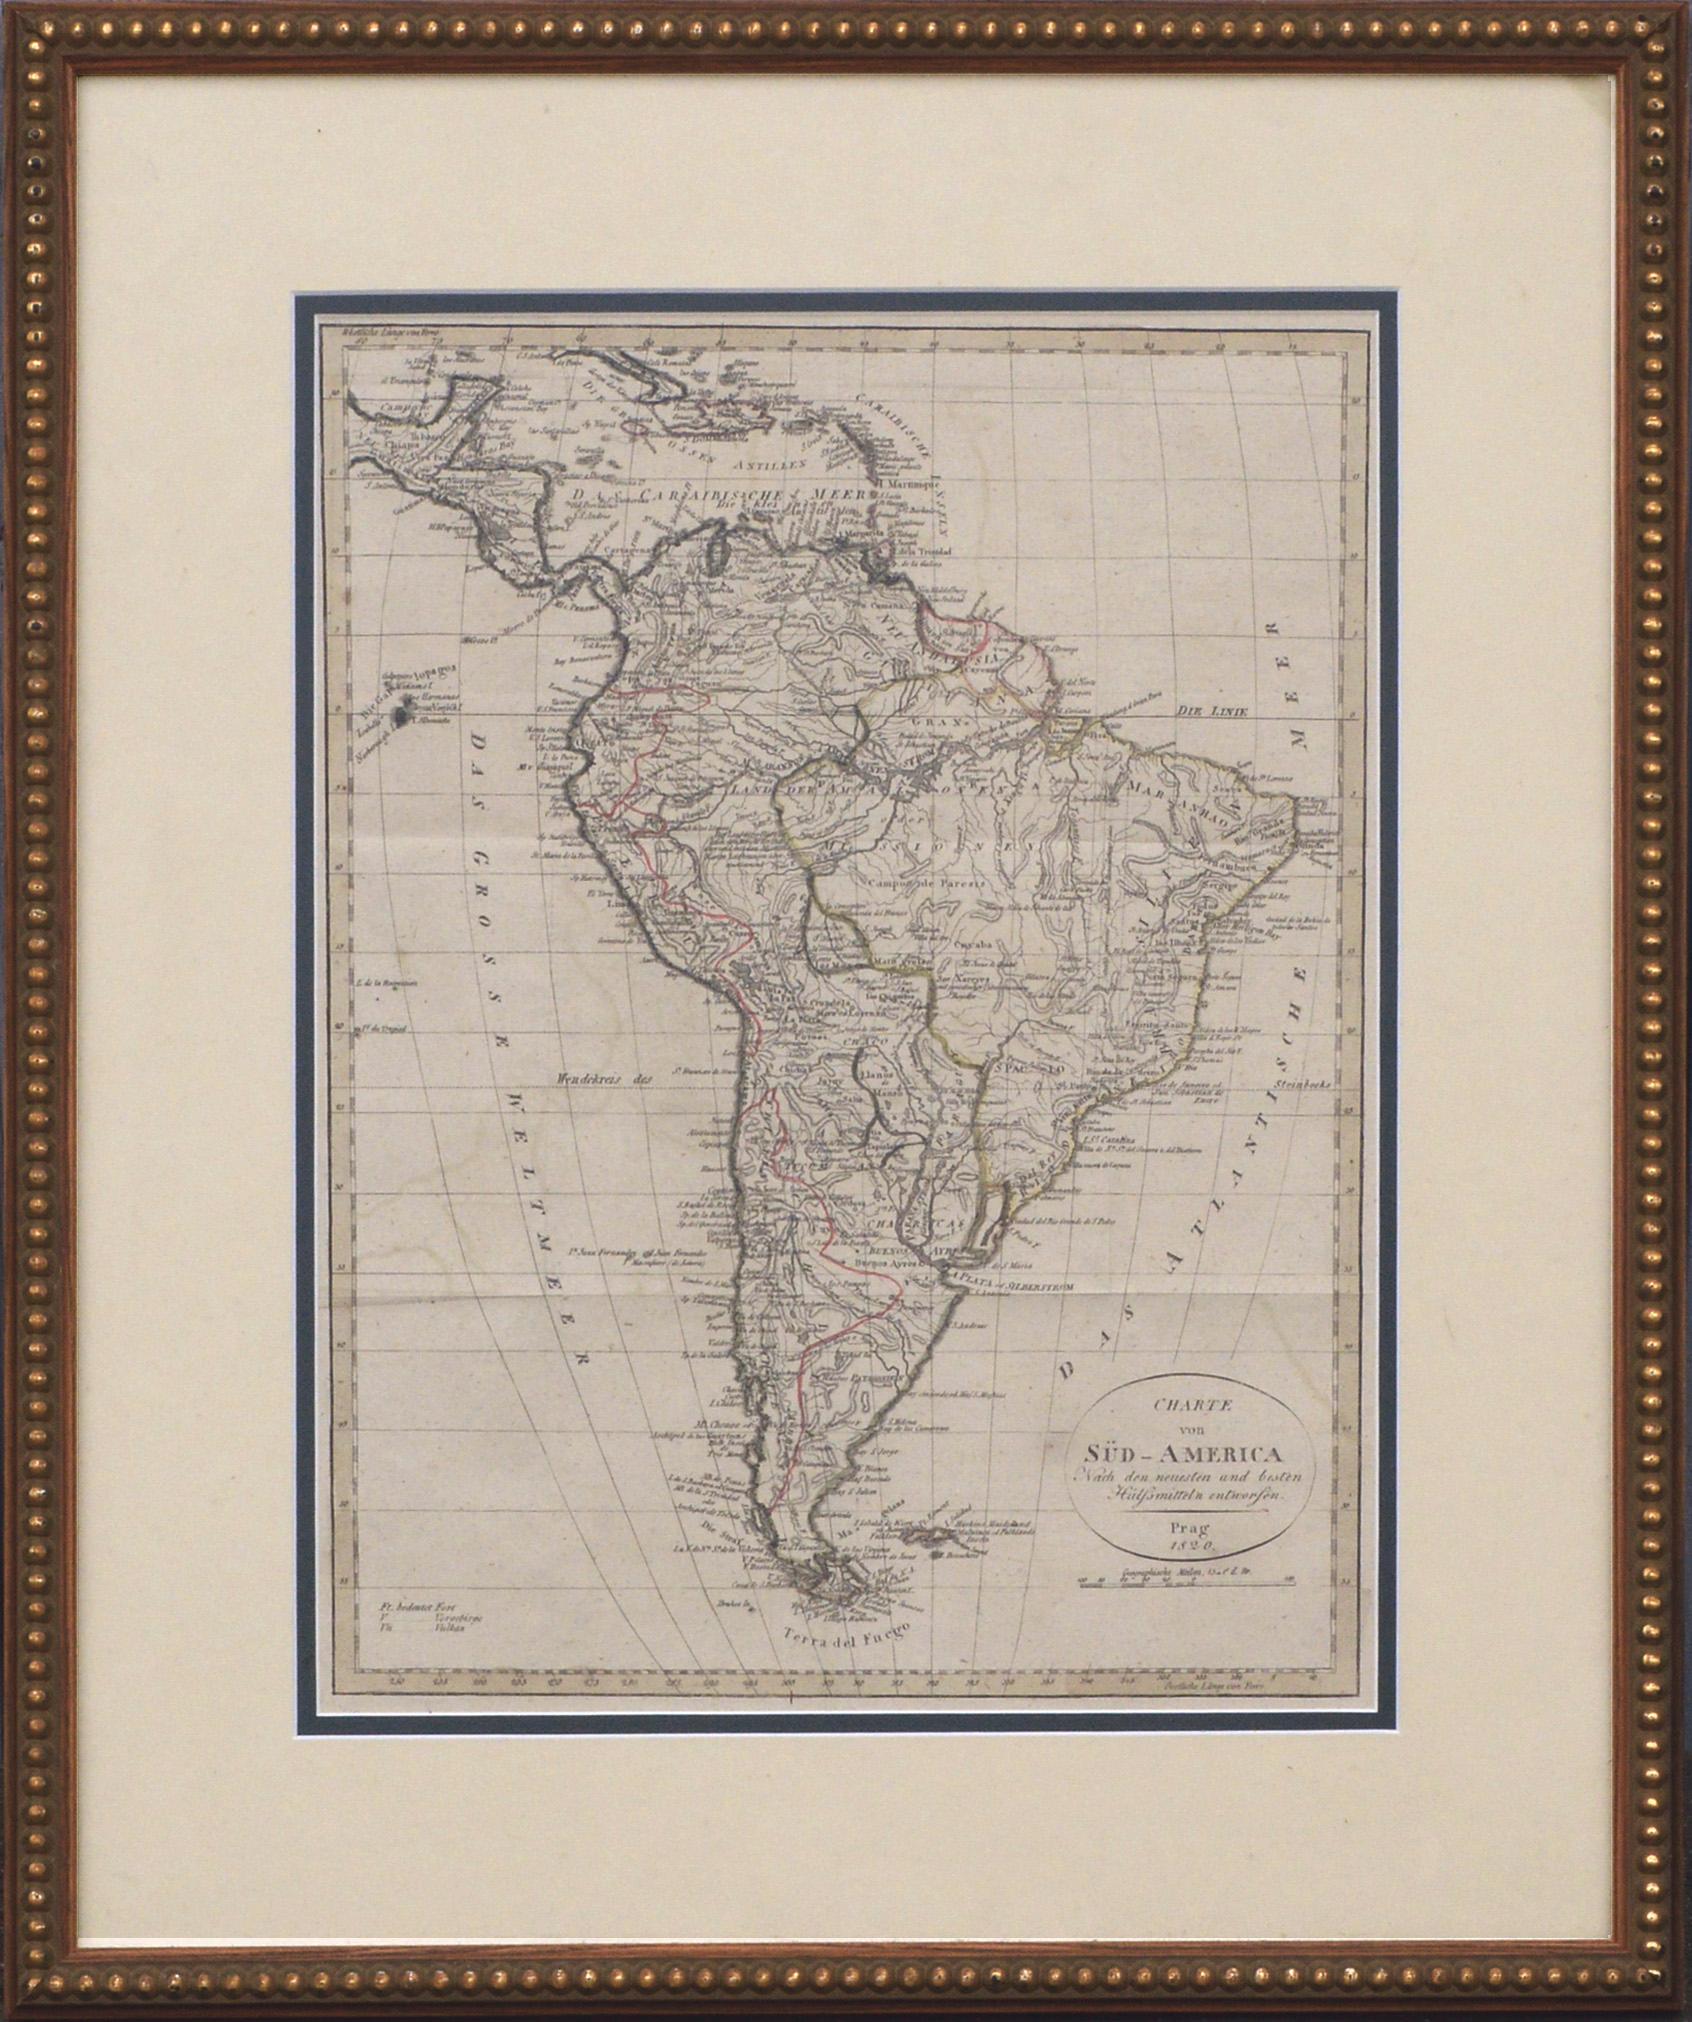 Charte von Sud-America (Carte d'Amérique du Sud) -Gravure à l'eau-forte avec contours dessinés à la main